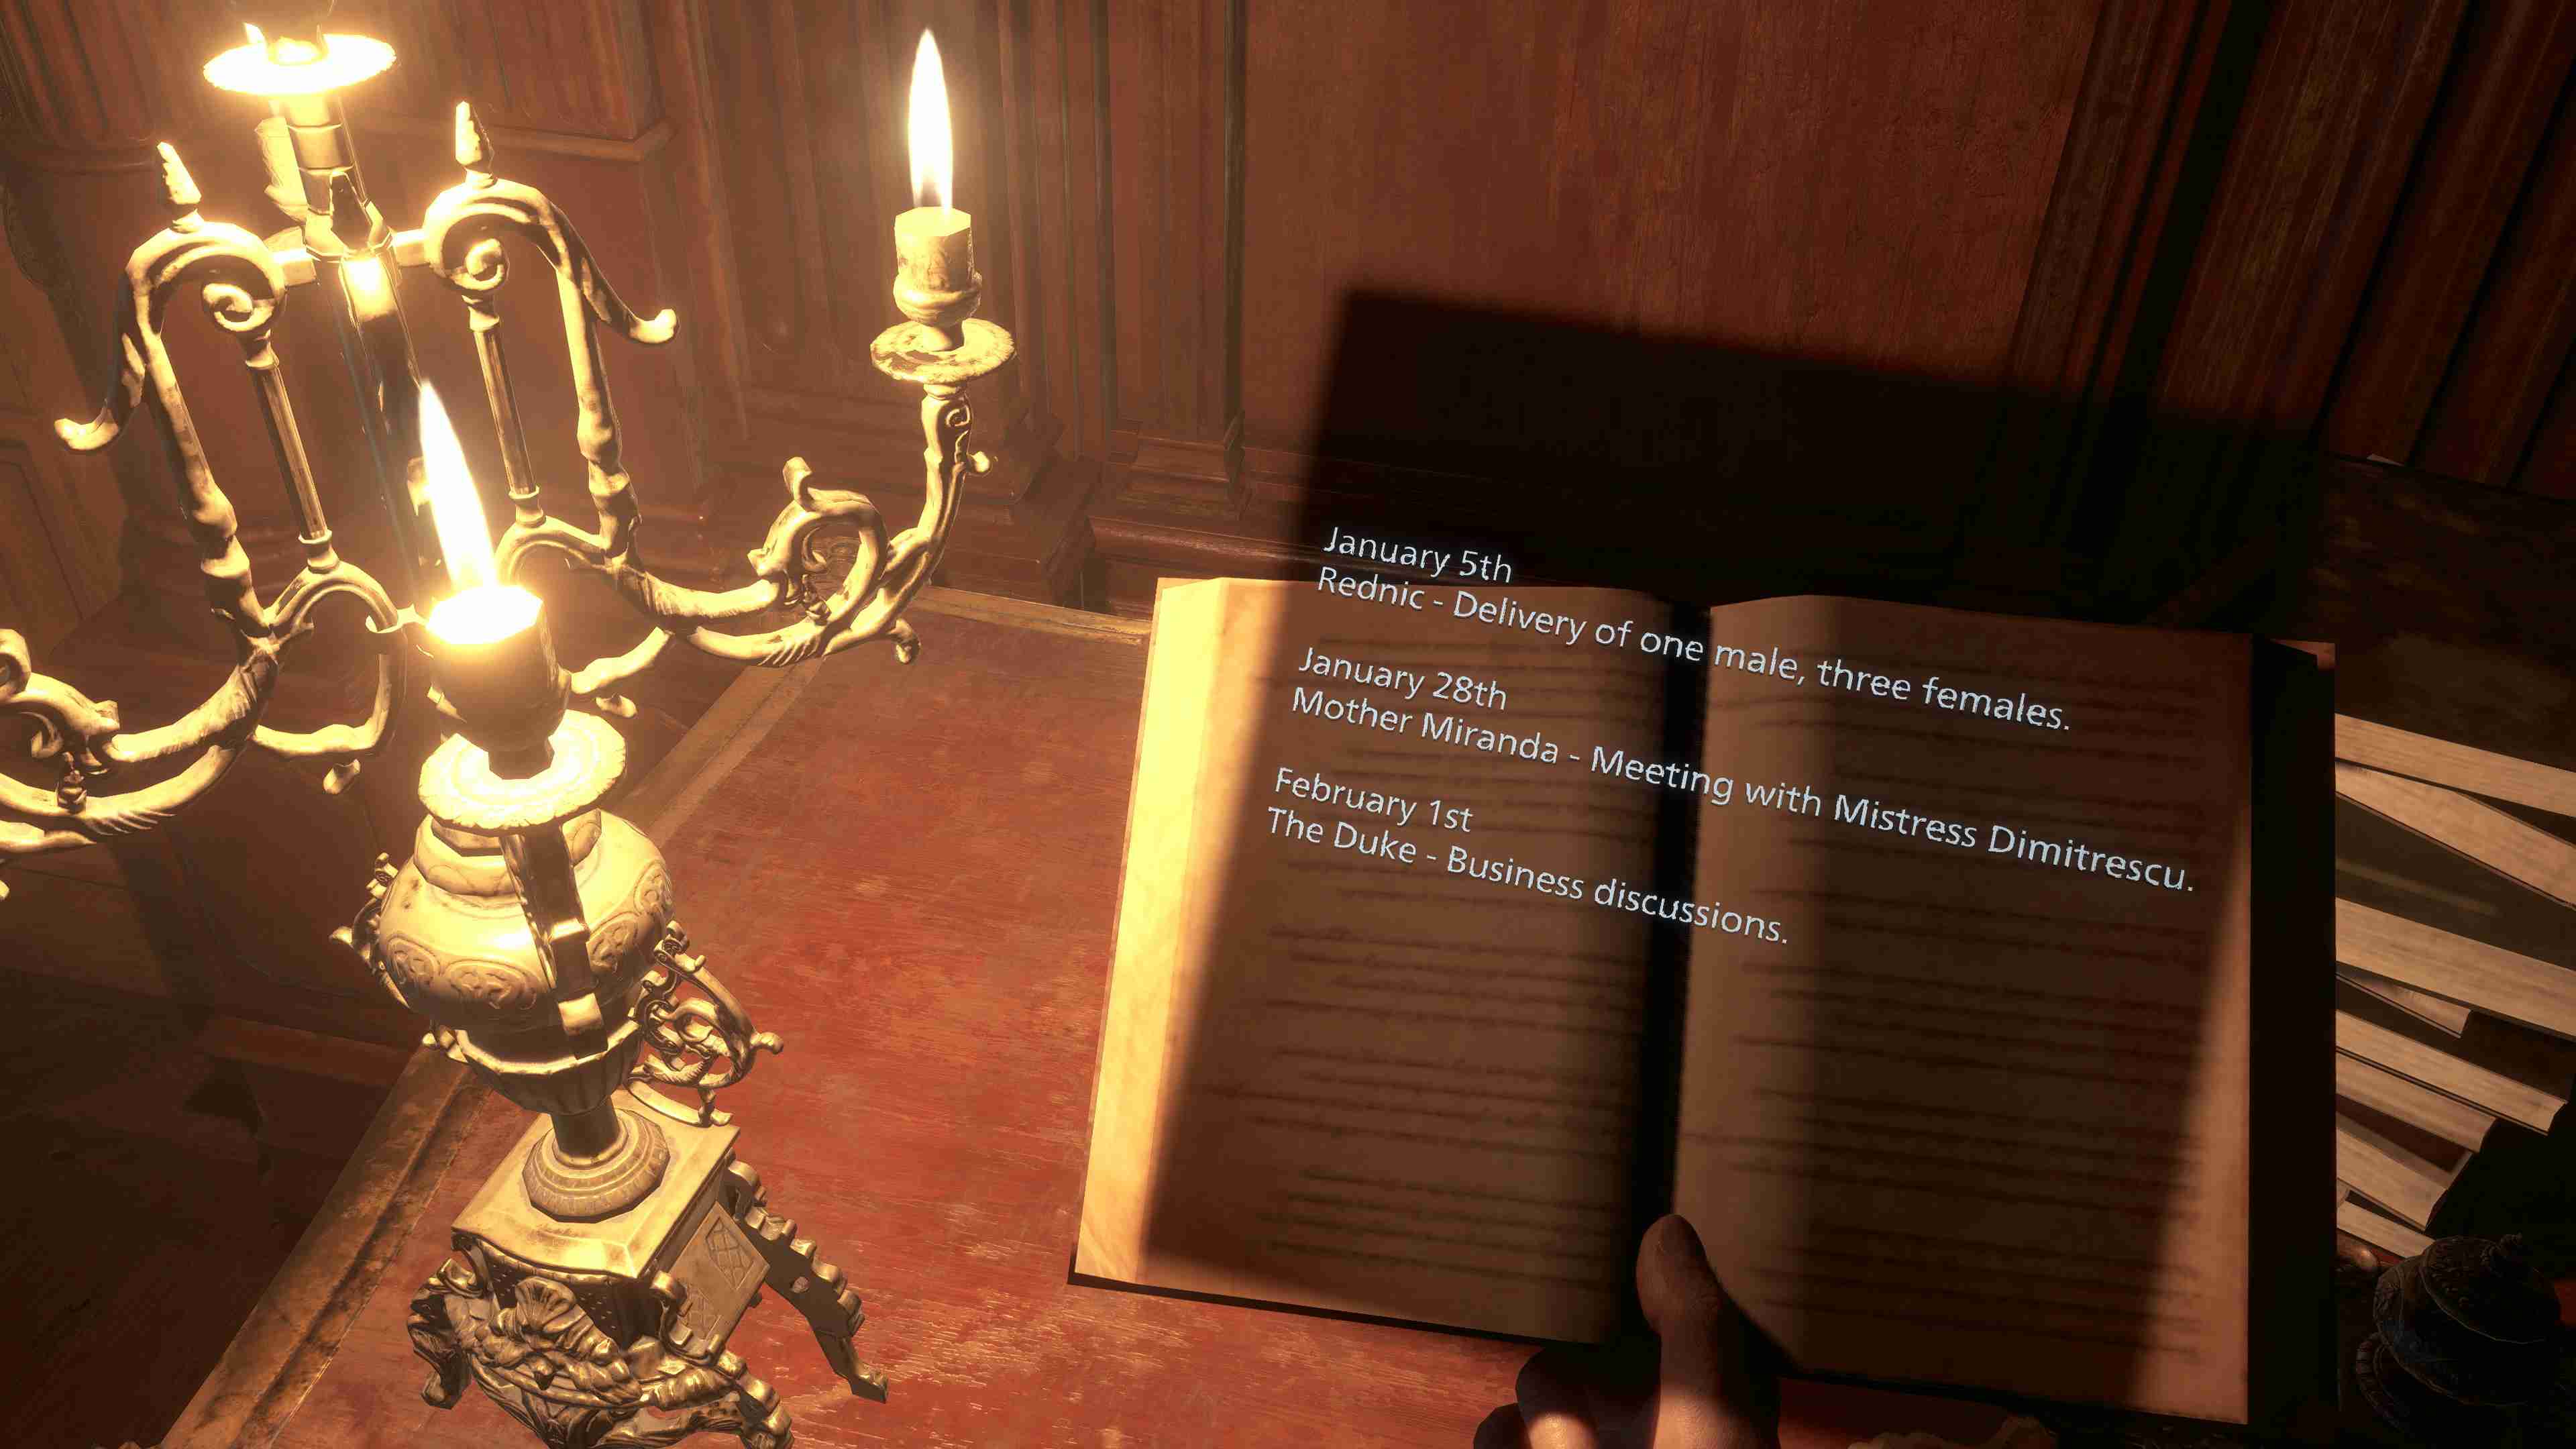 《惡靈古堡村莊》VR版將於2023年2月22日登陸PSVR2